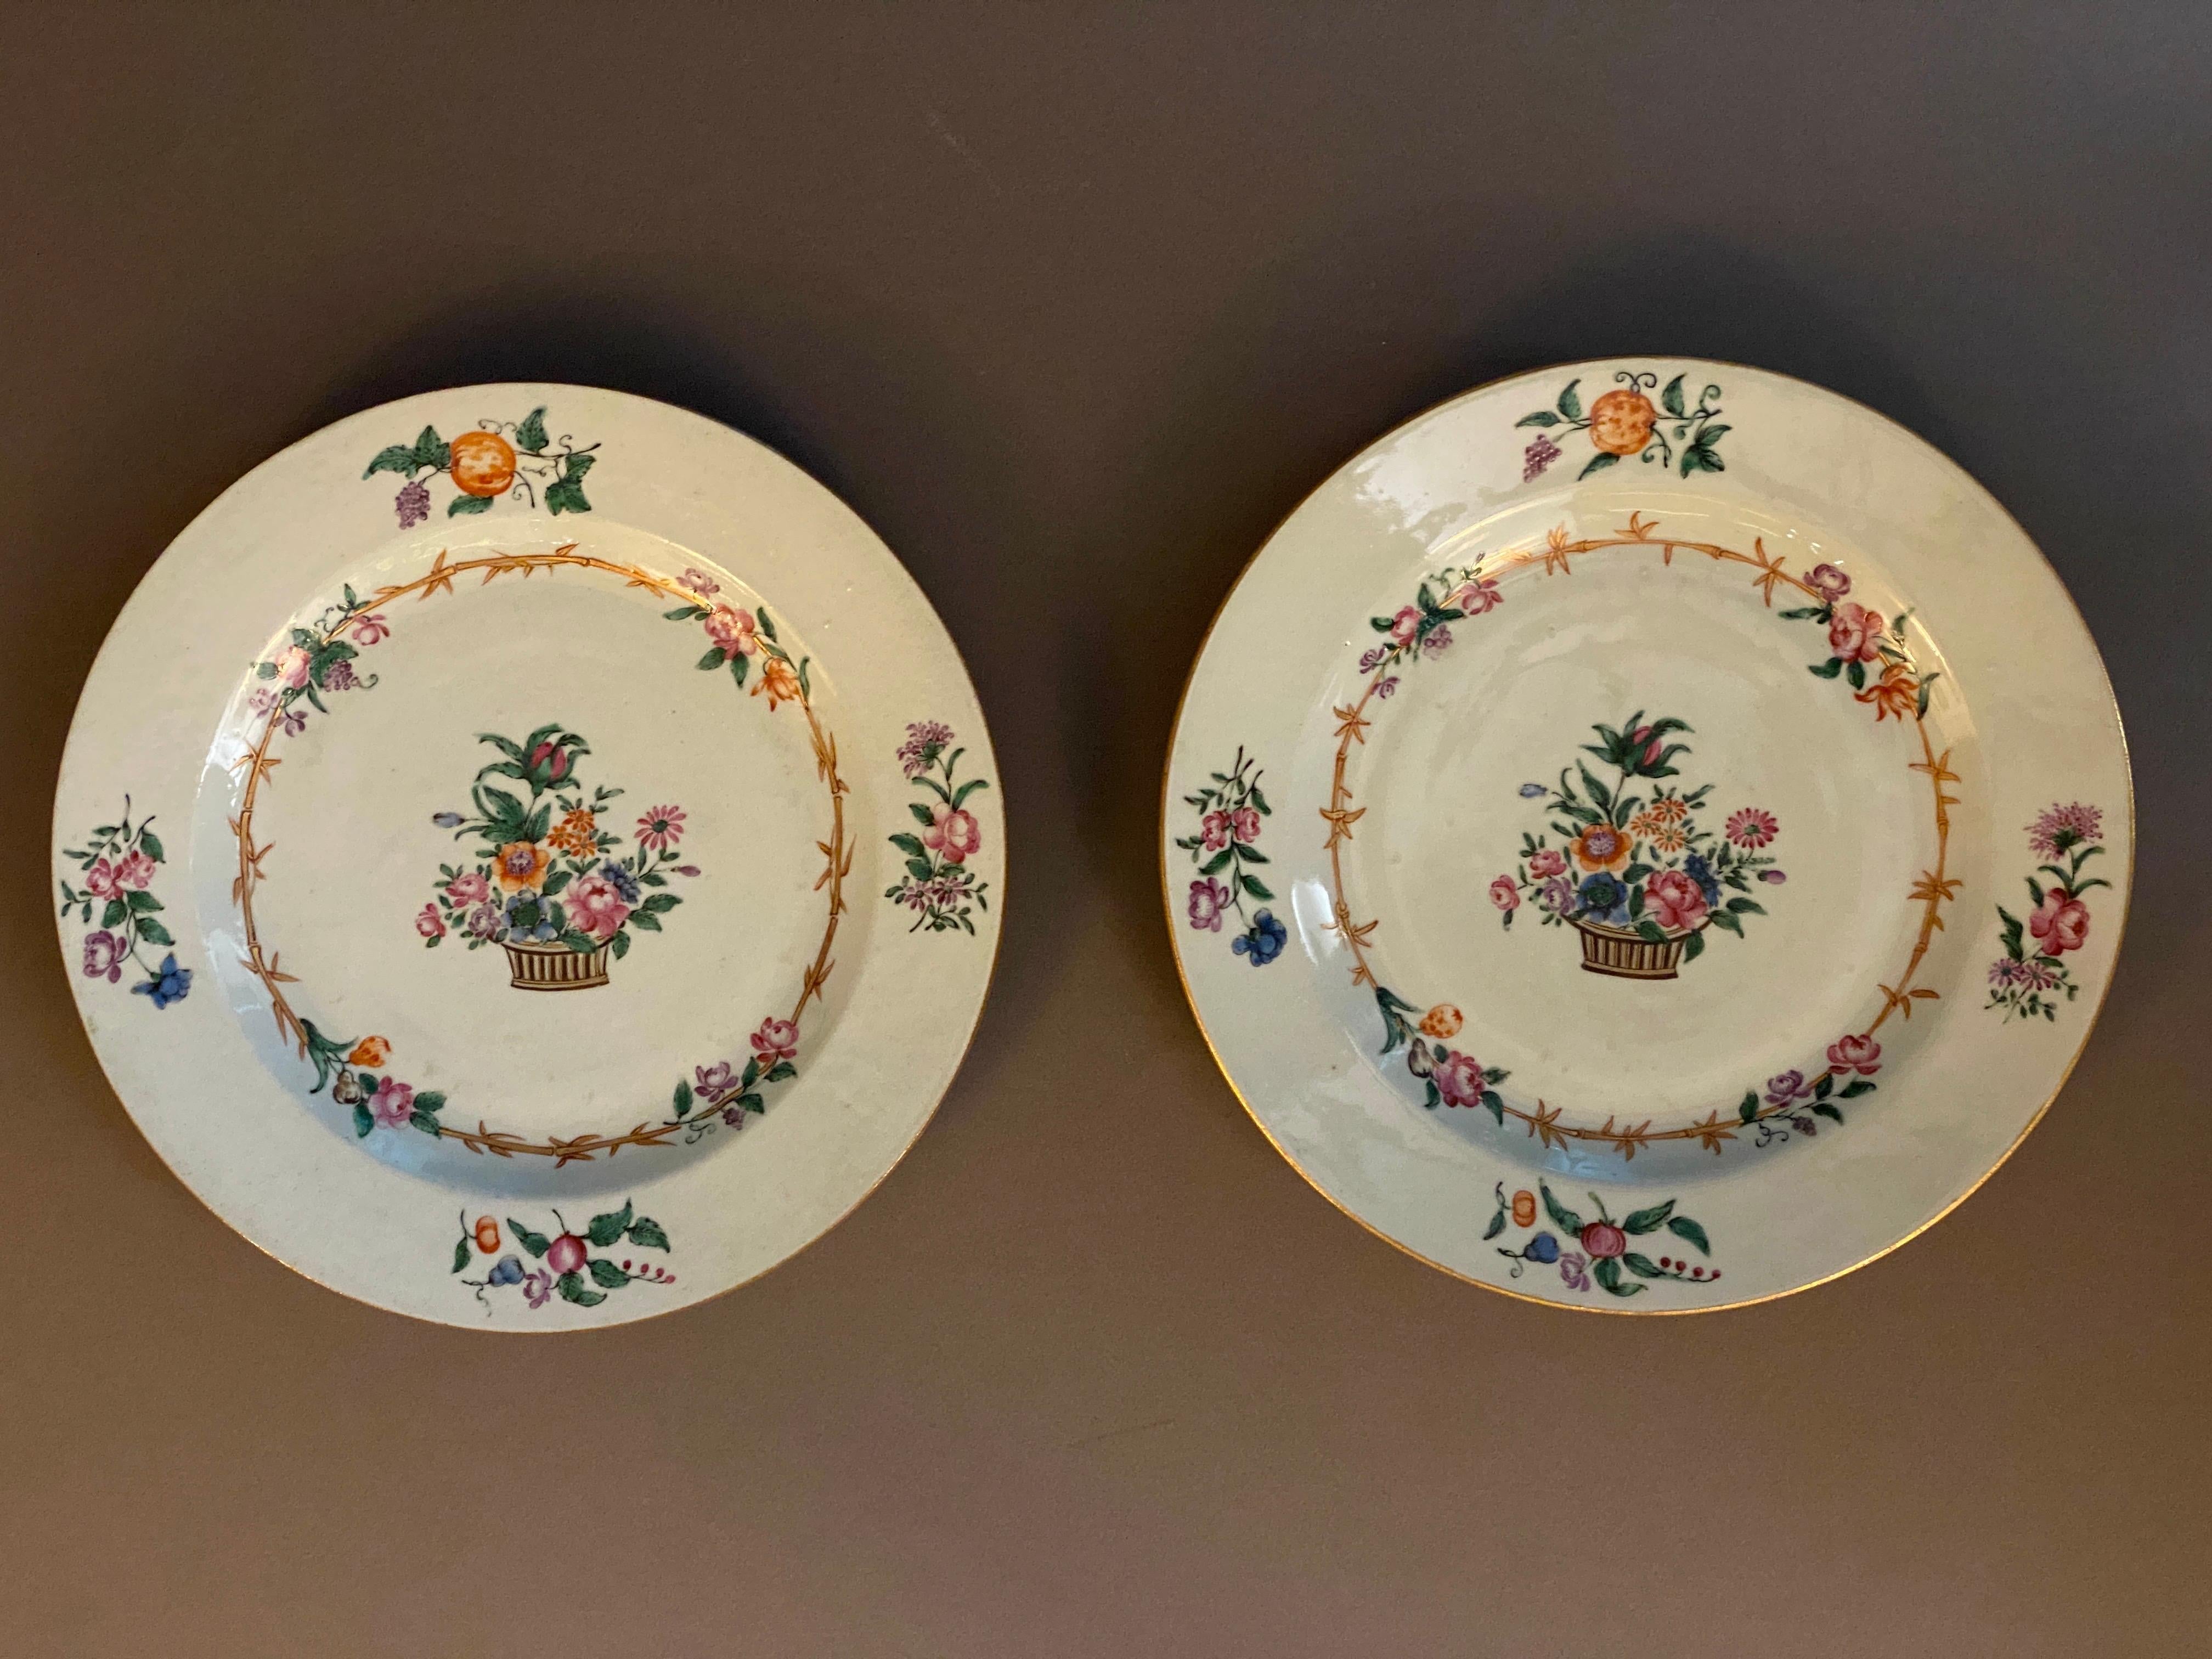 Paar Porzellanteller der East India Company aus dem 18. Jahrhundert mit polychromem und vergoldetem Dekor aus Korb, Blumen und Bambus.

Leichte Abnutzung der Emaille. Einer mit einem sehr kleinen Chip am hinteren Rand, der von vorne nicht sichtbar